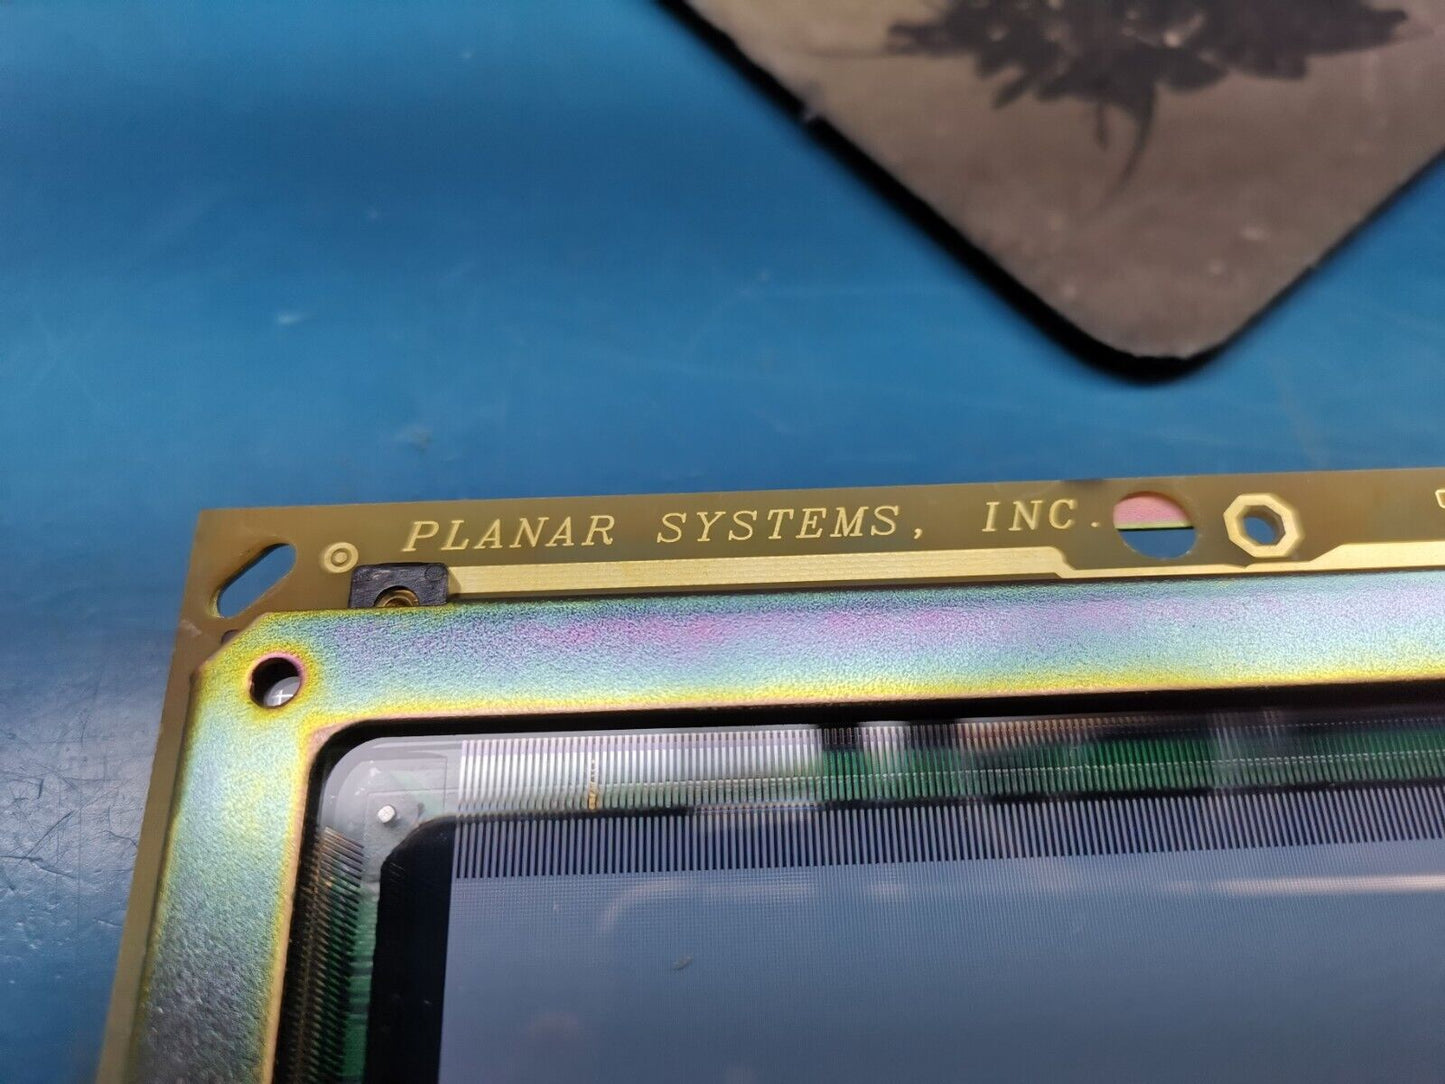 Planar Systems EL8358HR 9.1 Industrial Panel Display 996-0107-00 Rev E